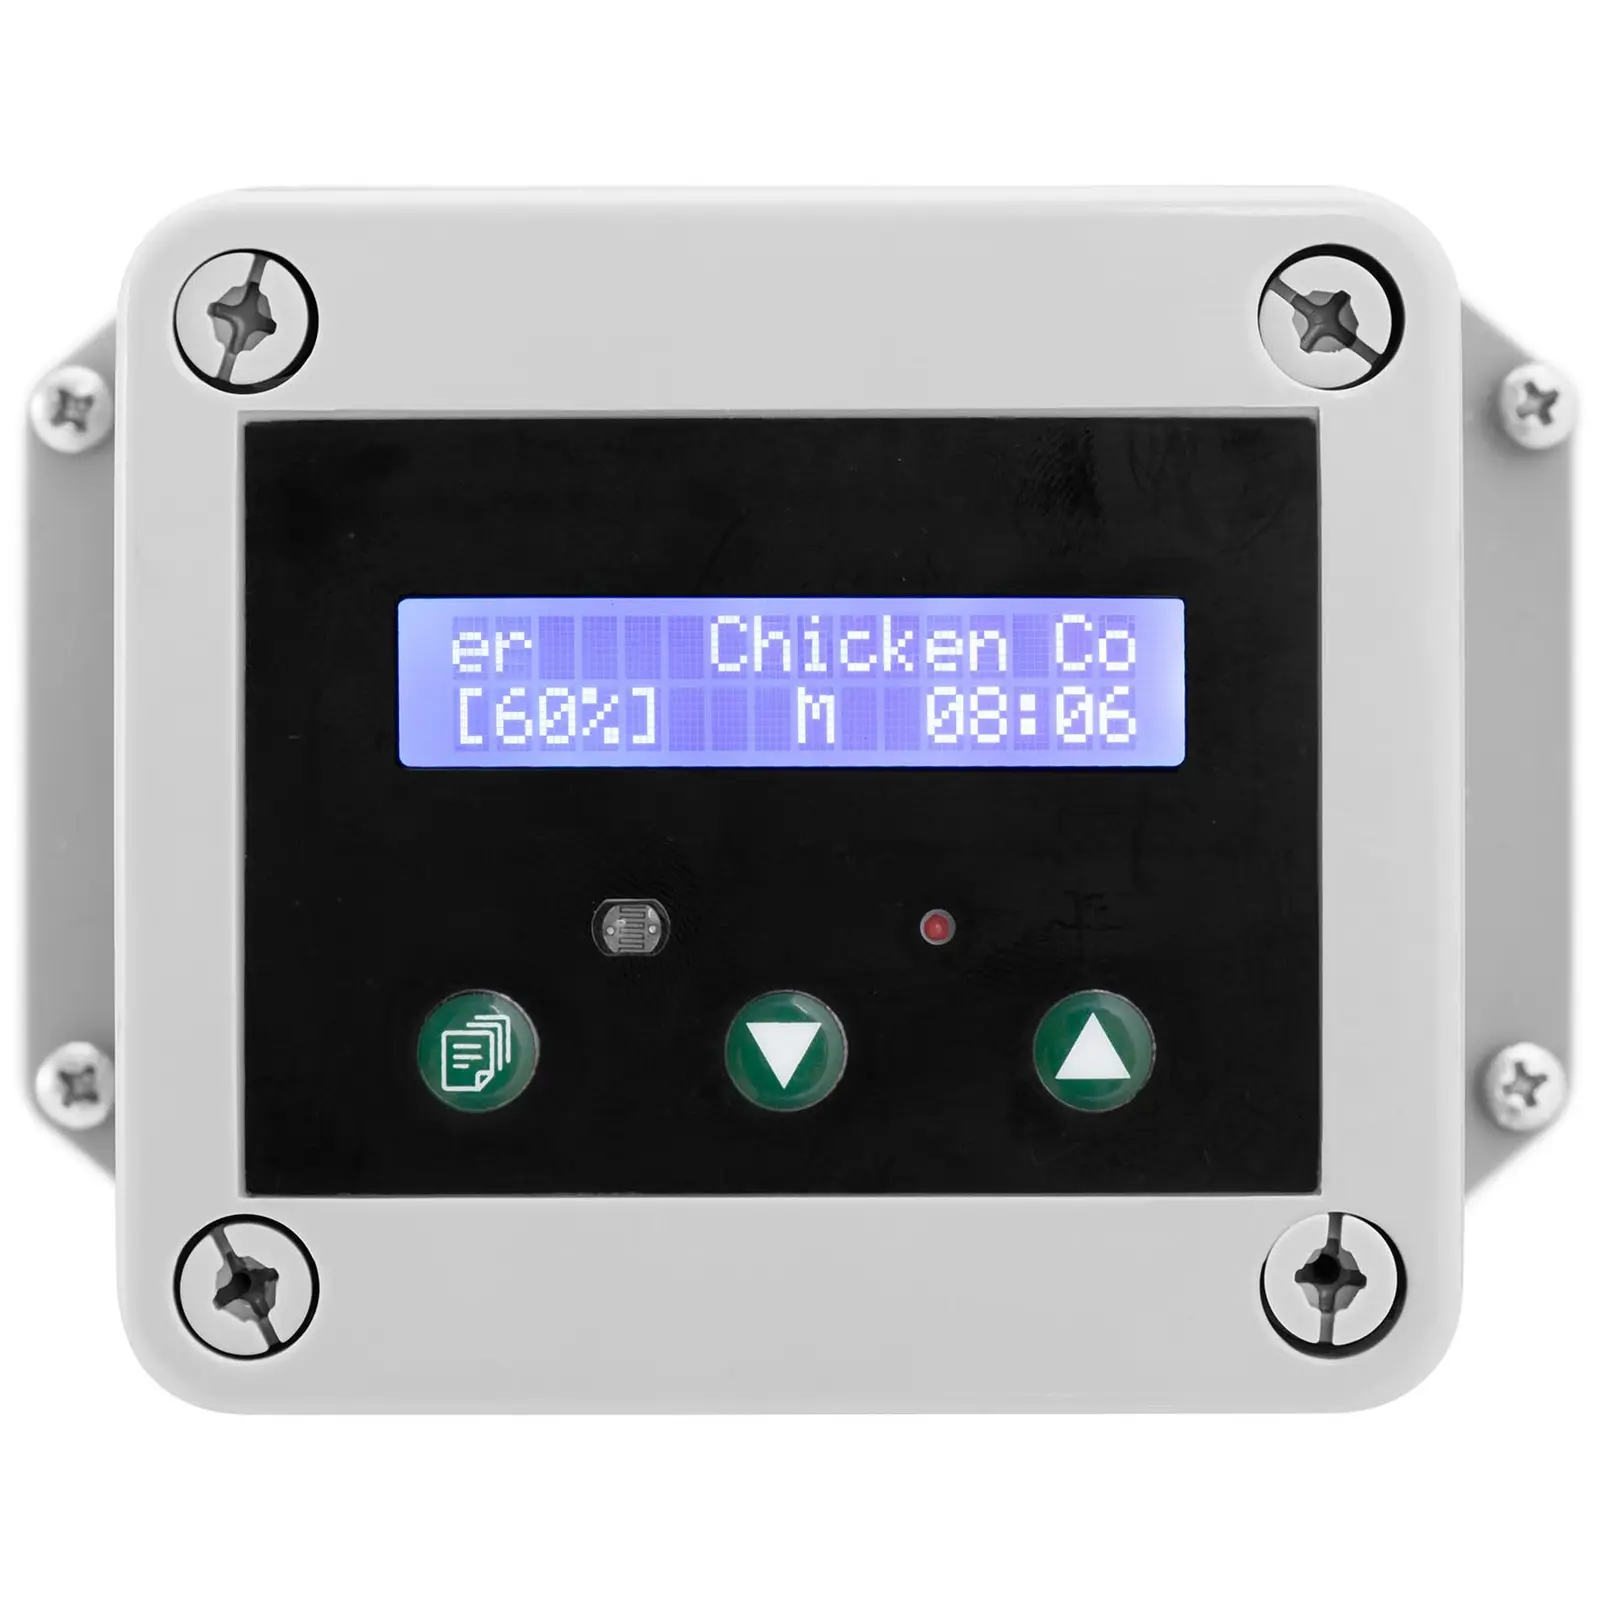 Porta automática do galinheiro - temporizador / sensor de luz - alimentado por bateria - caixa à prova de água - medição exacta dos valores lumínicos